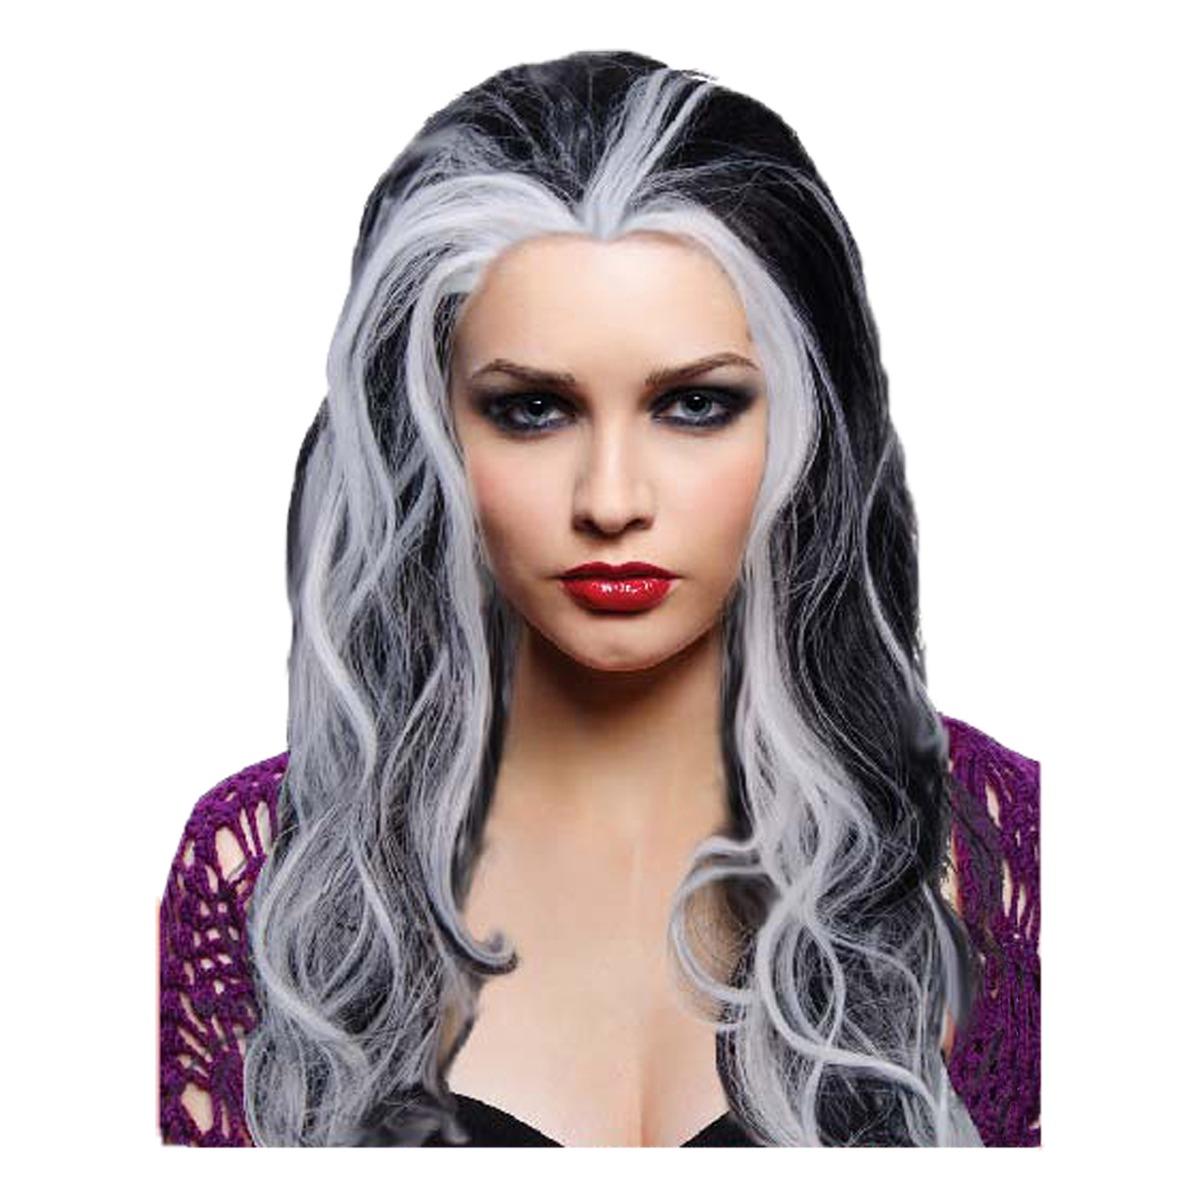 Perruque de vampire pour femme - taille unique - Noir et gris